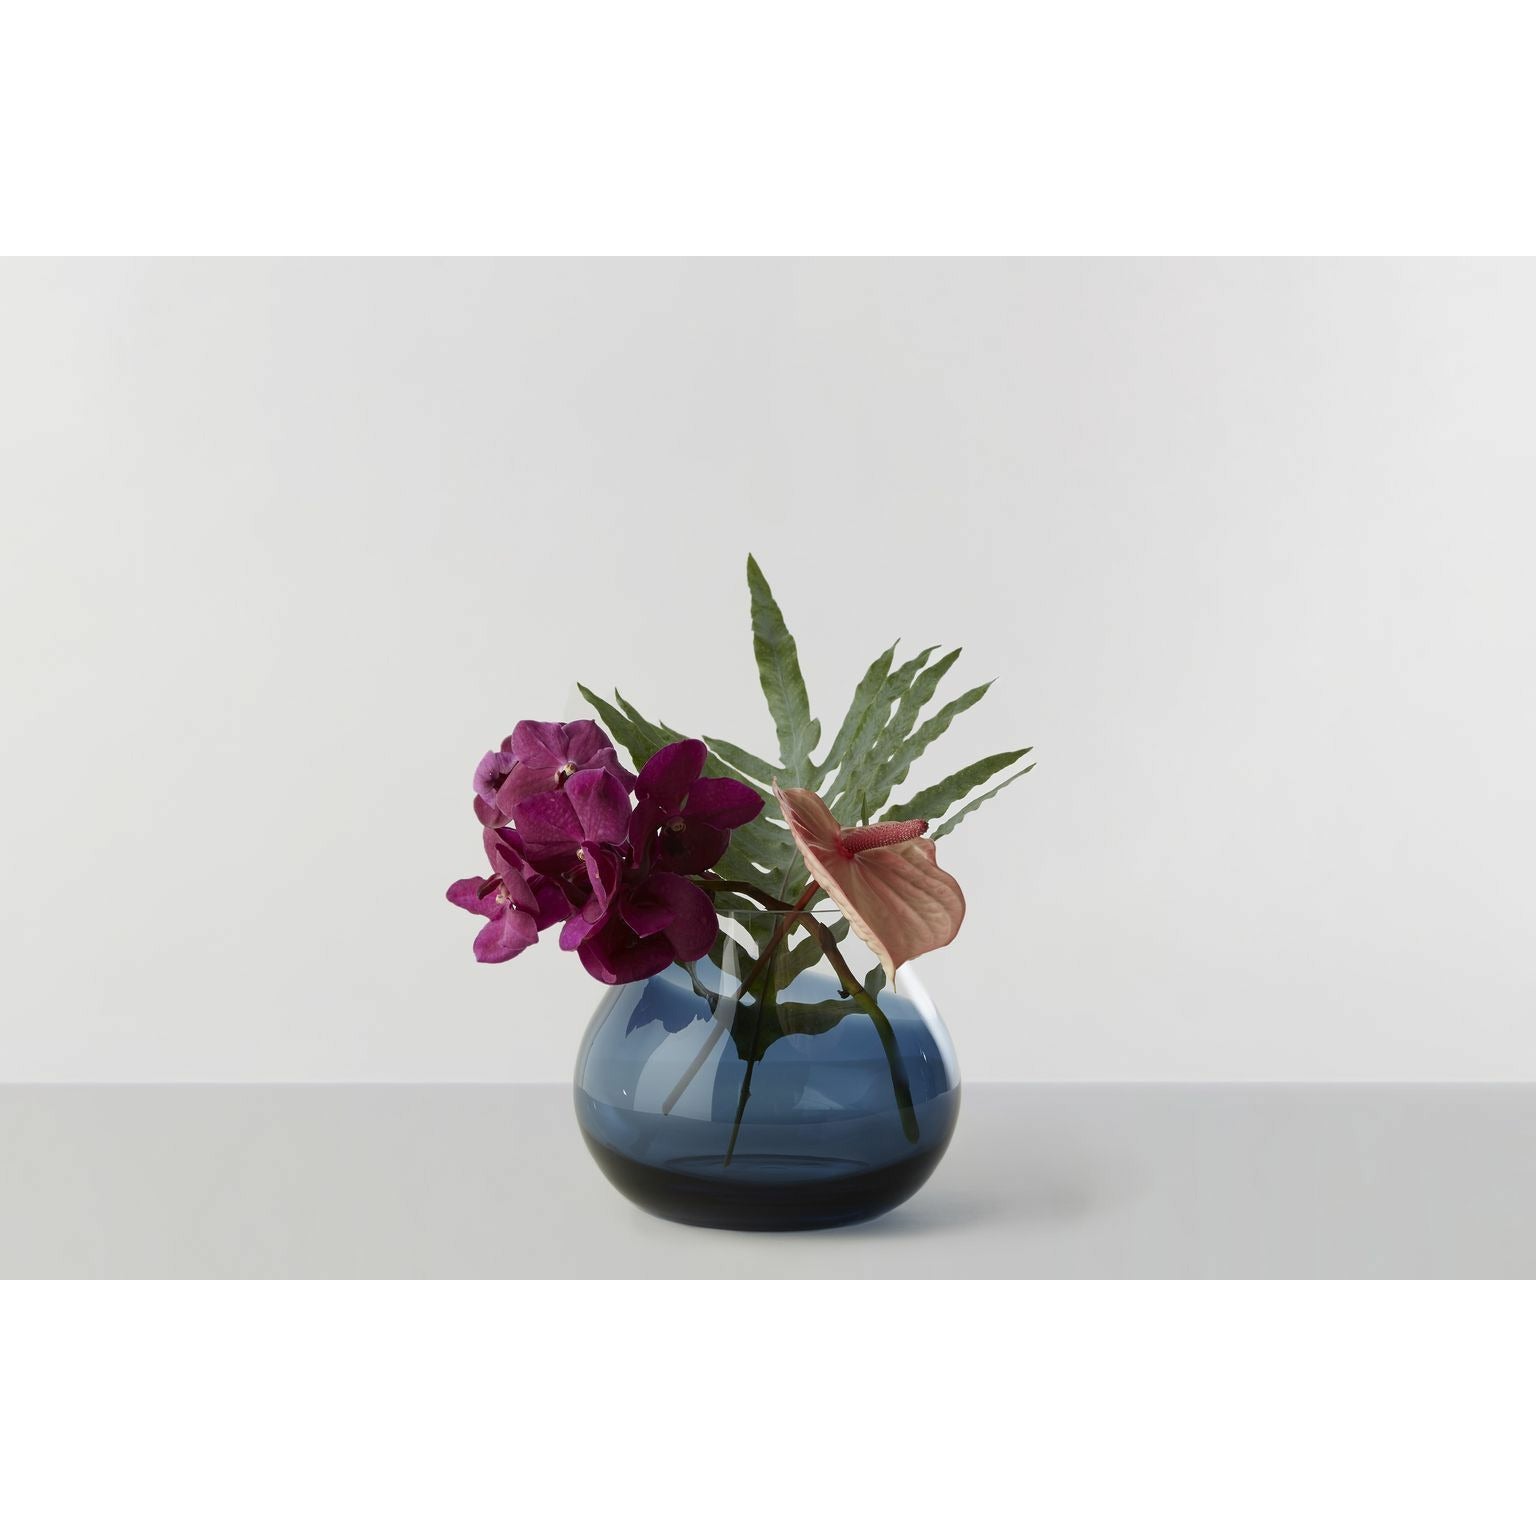 RO -samling nr. 23 blomstervase, indigo blå